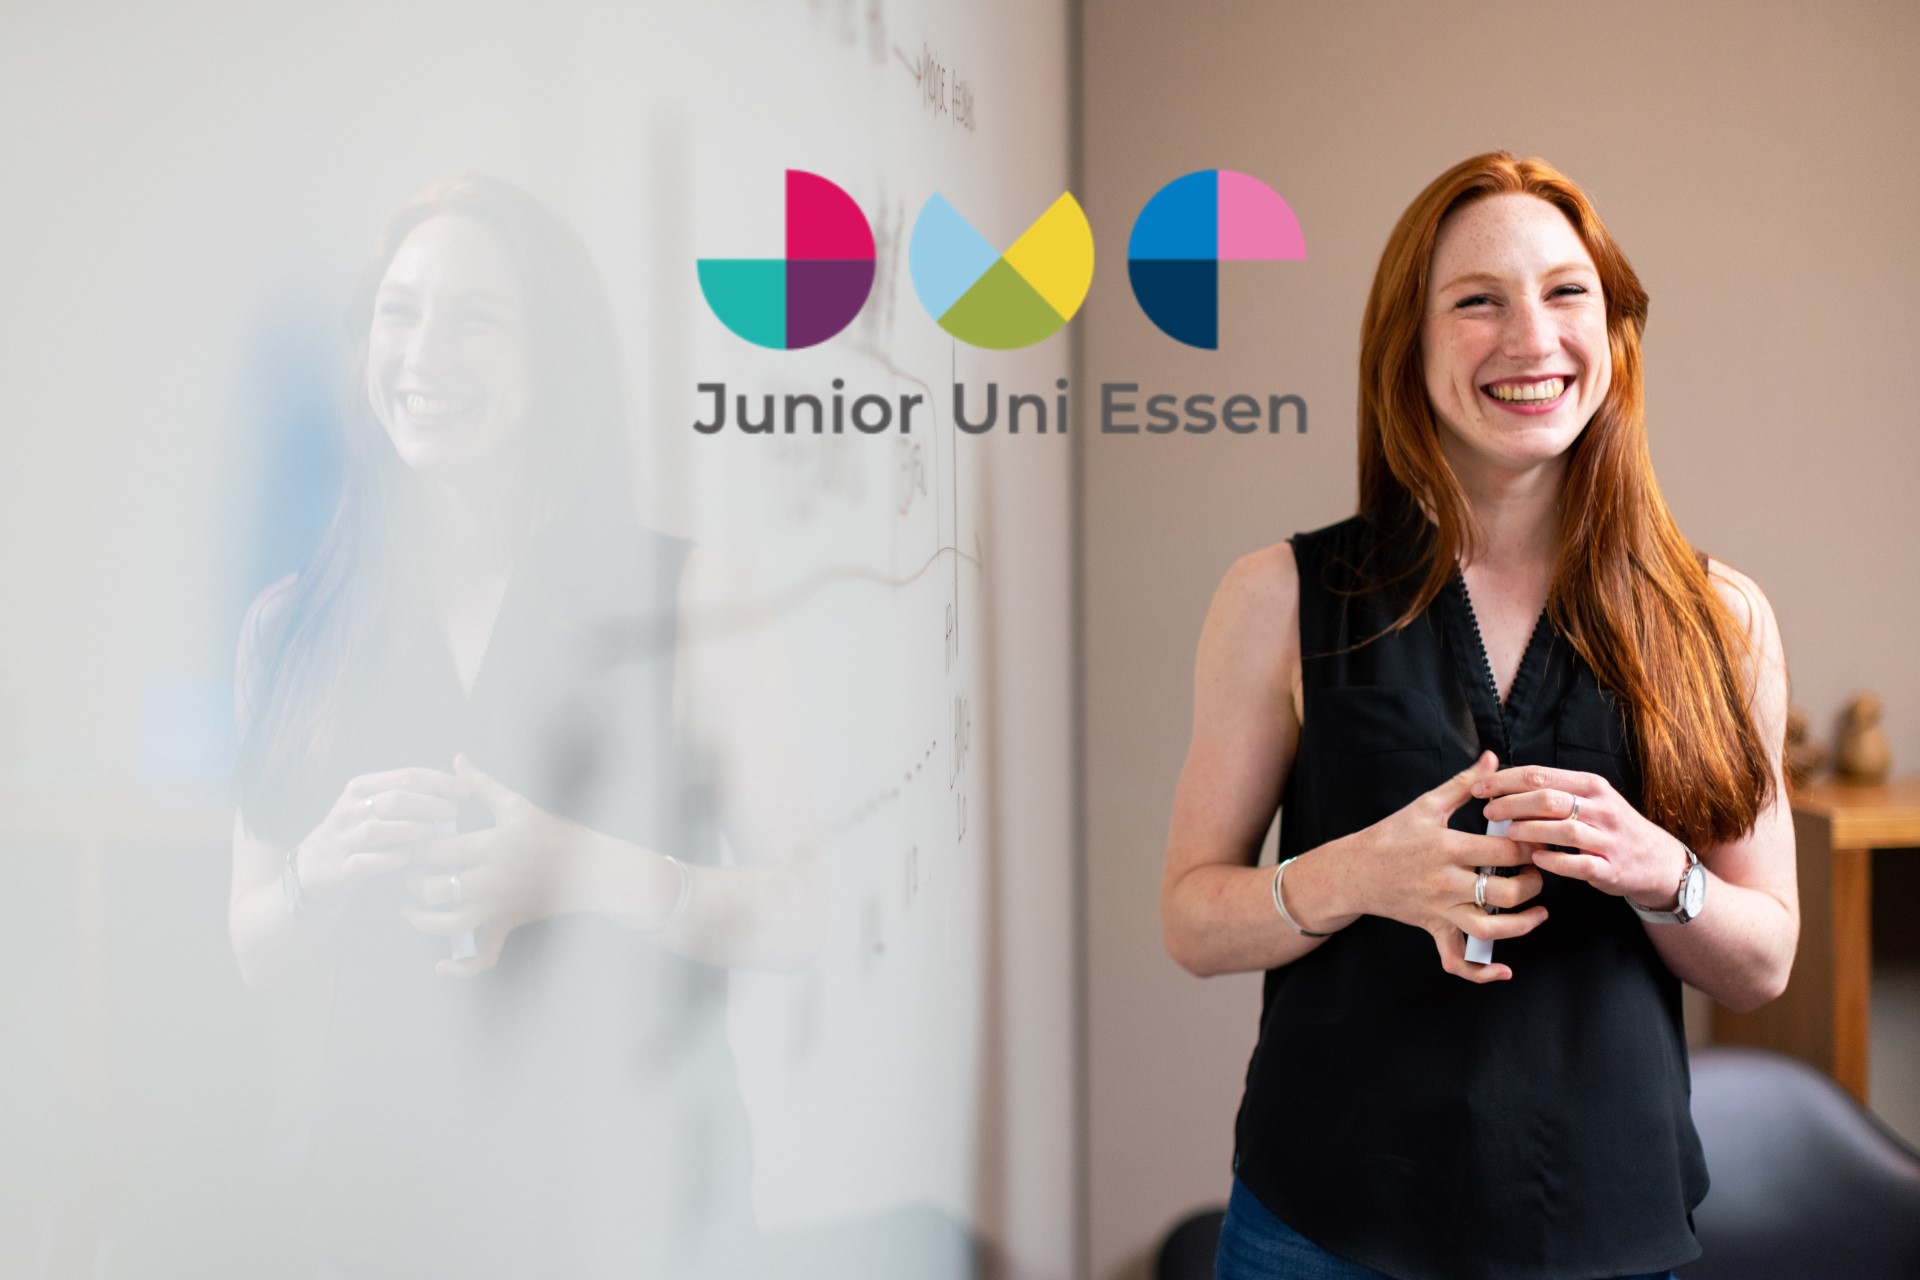 Korte Stiftung Projekt Junior Uni Essen